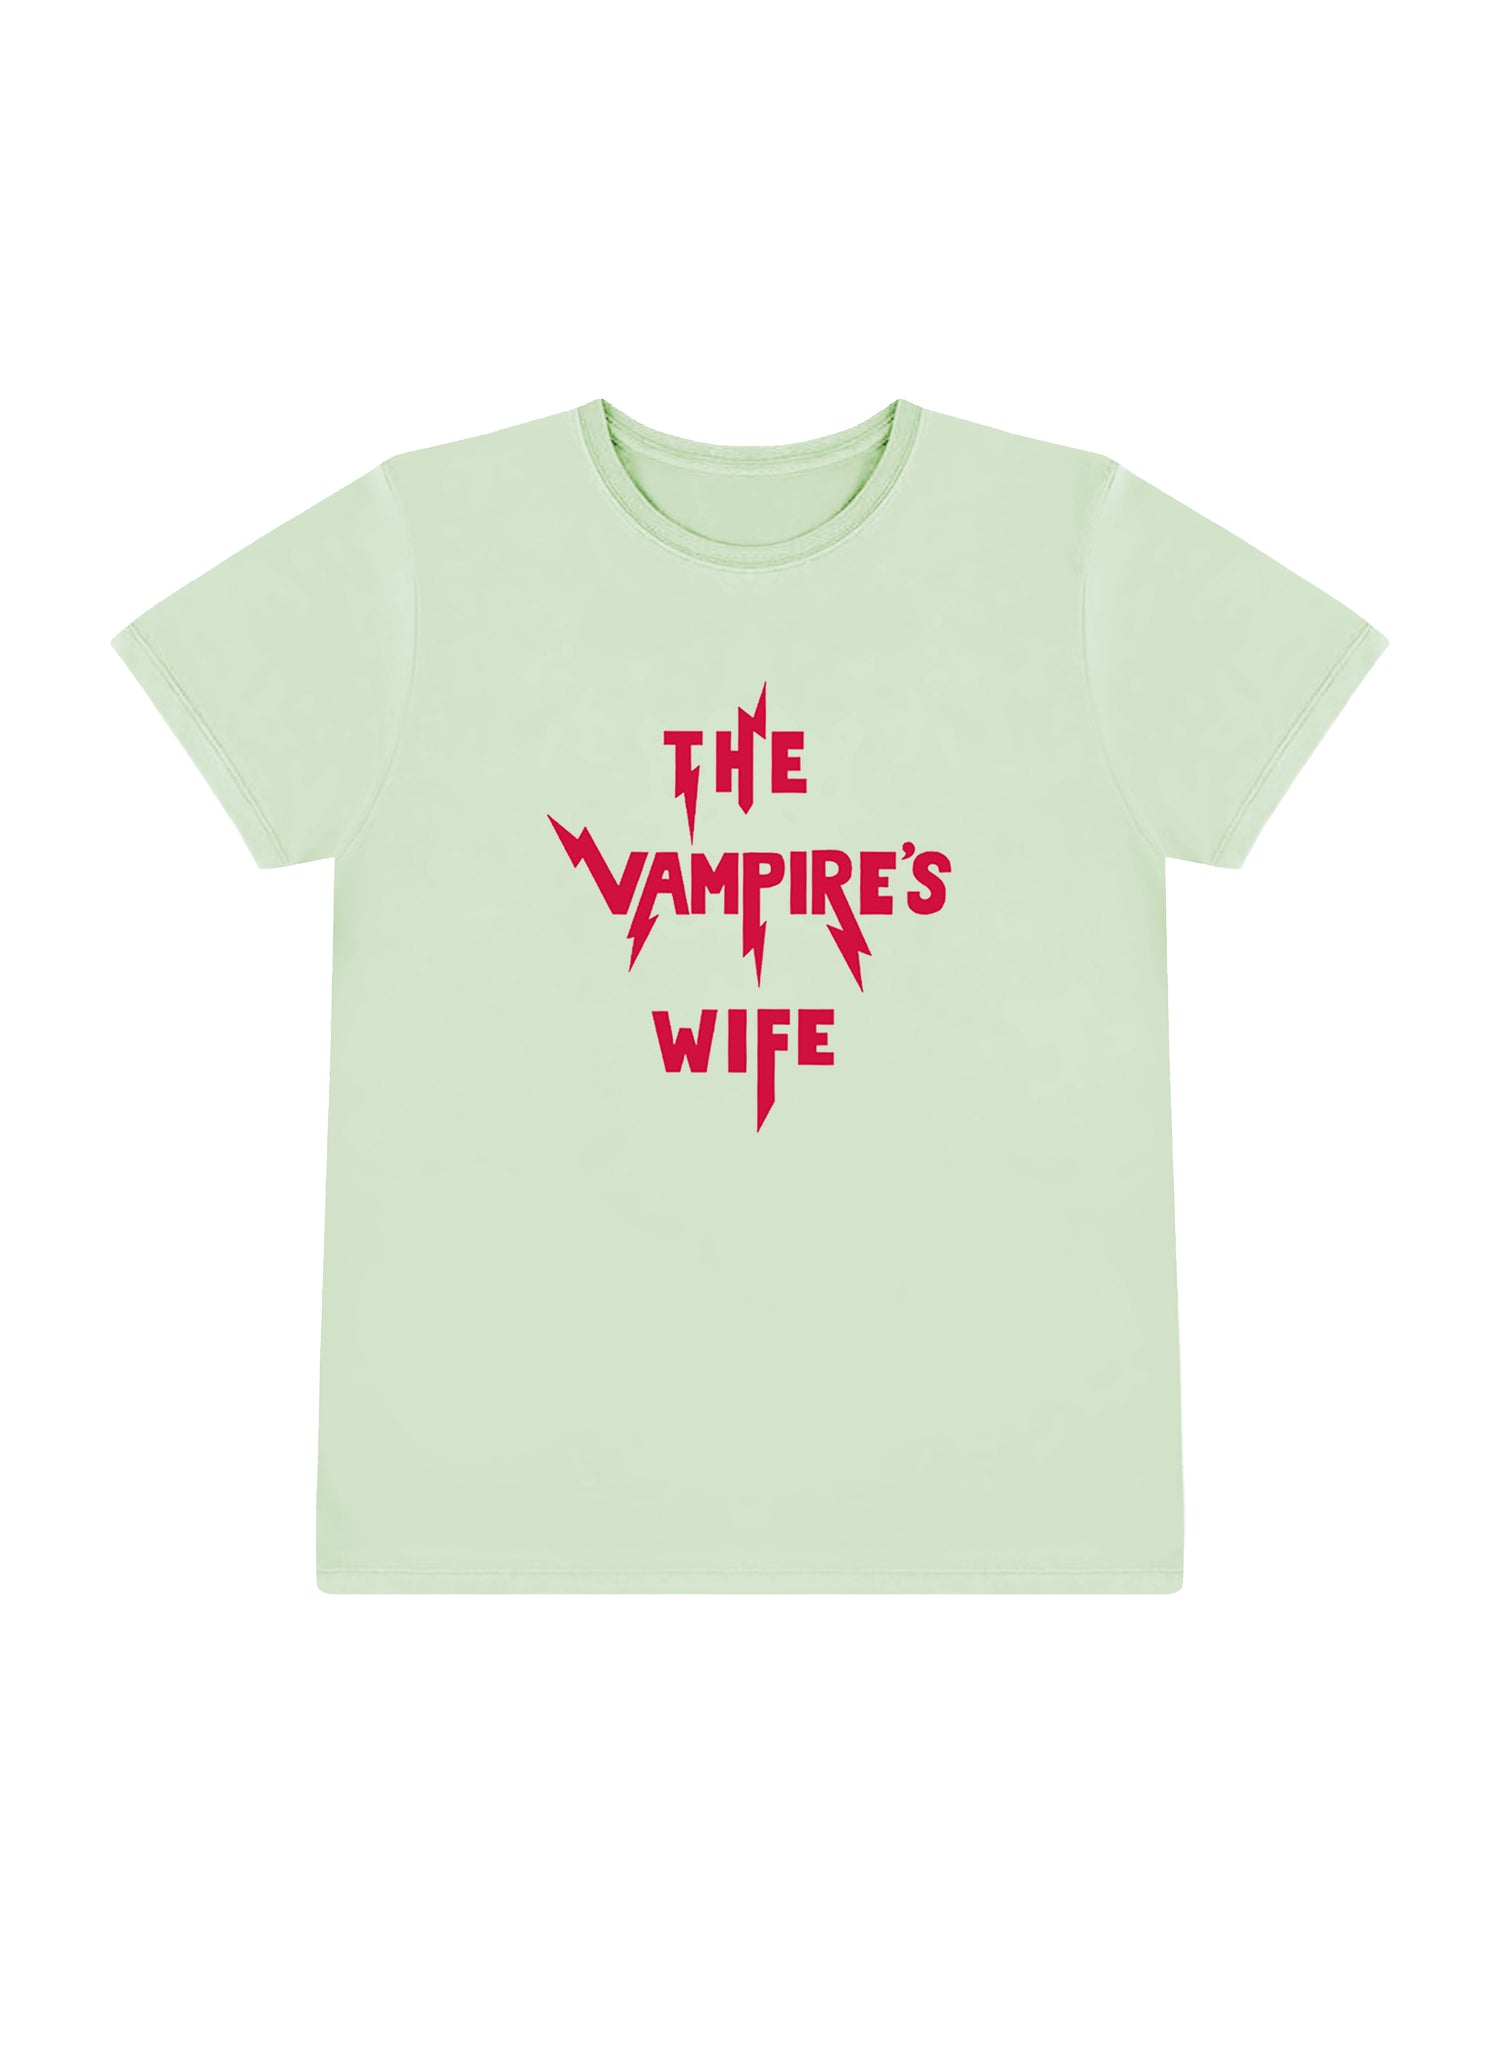 THE VAMPIRE'S WIFE T SHIRT